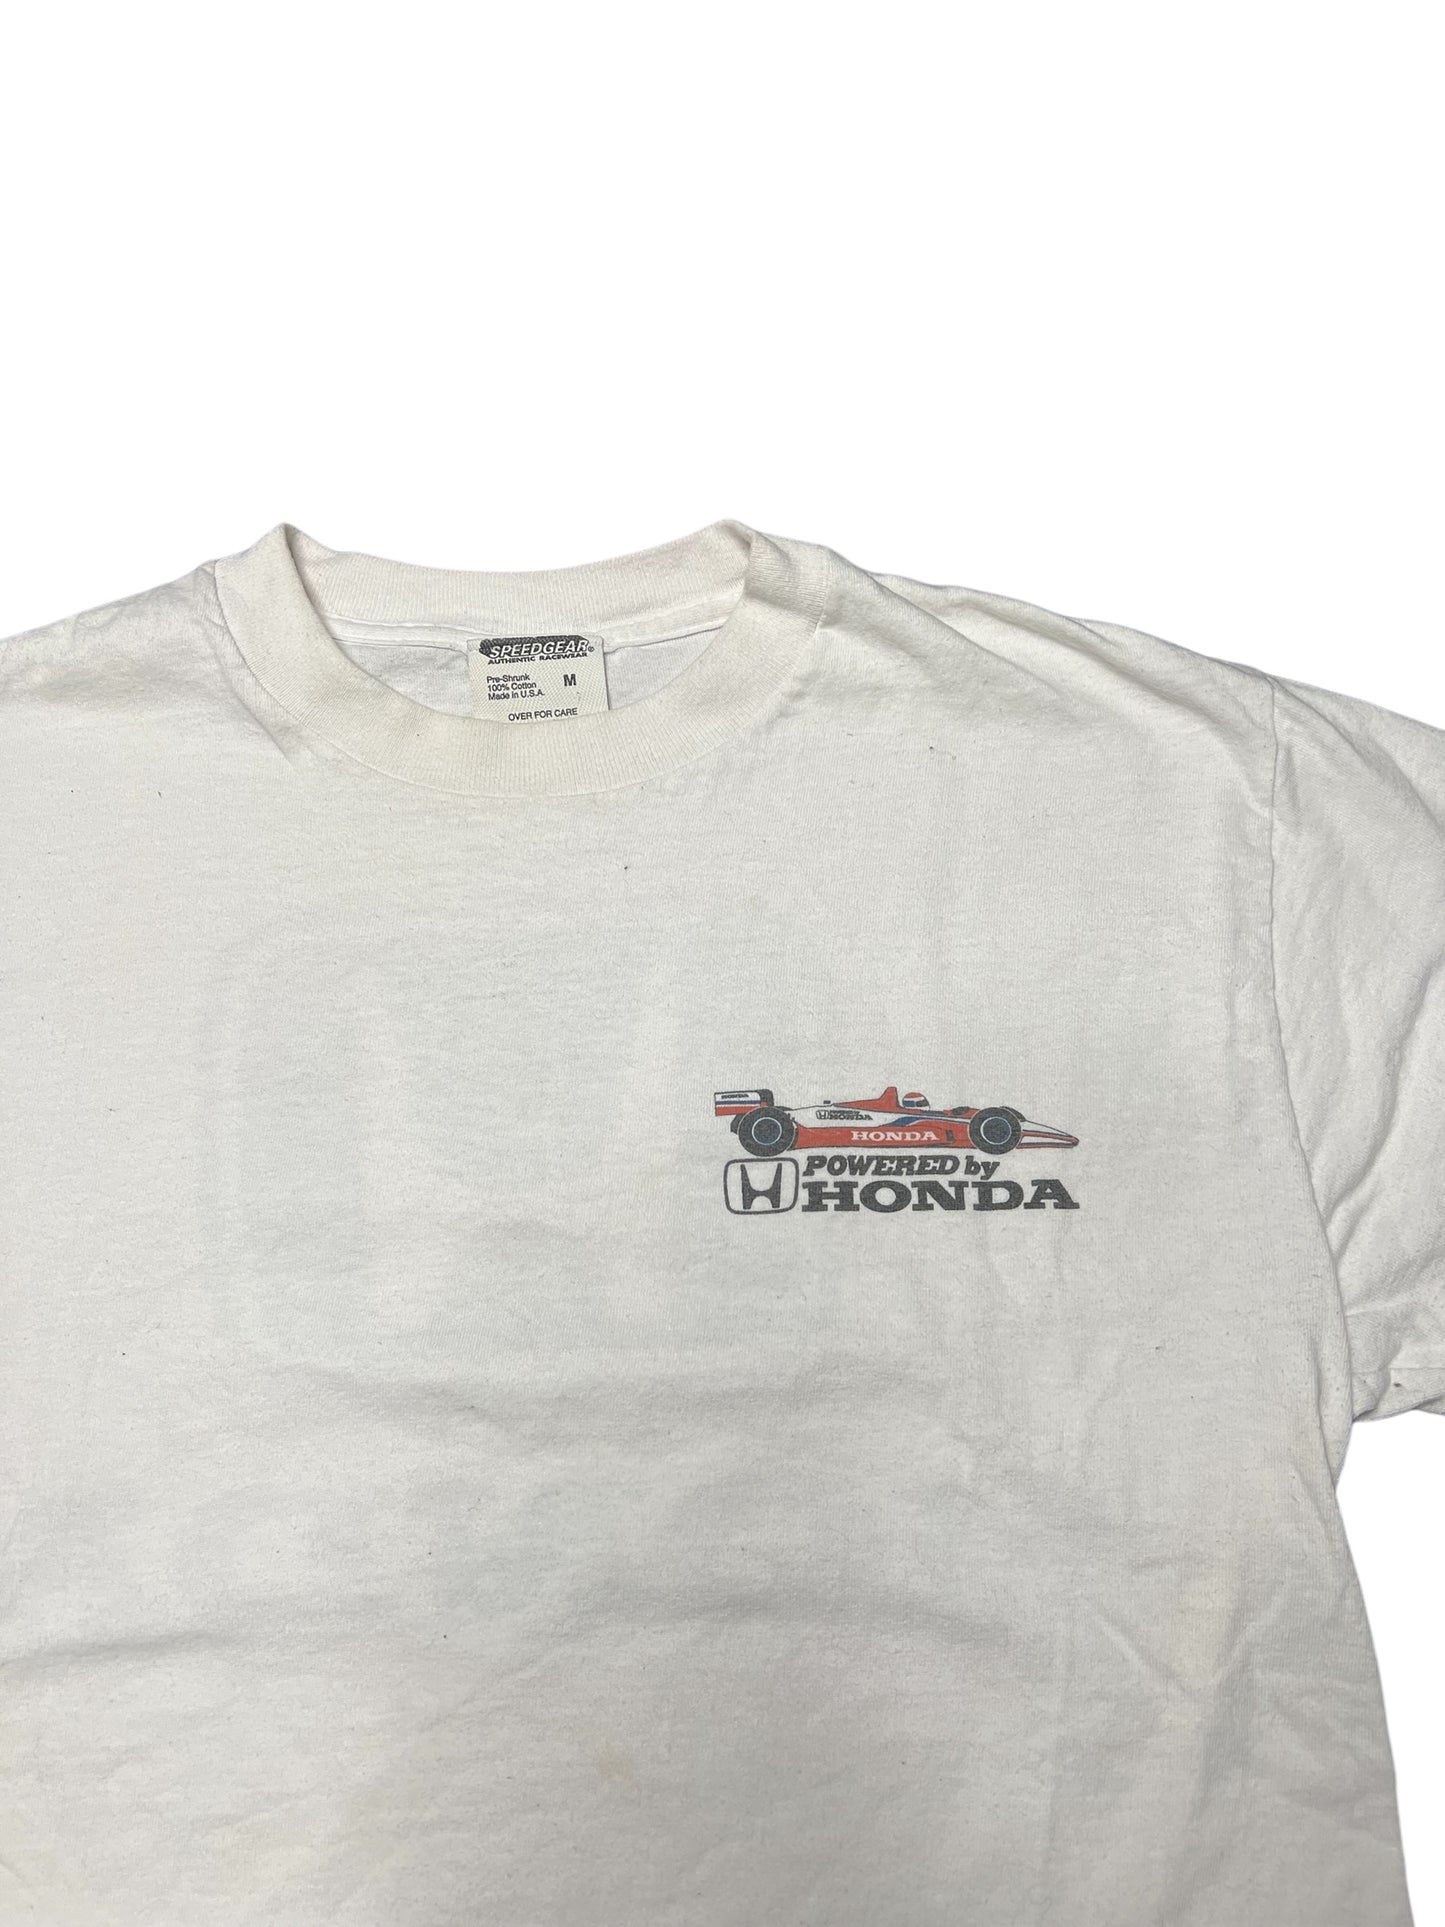 Vintage 1998 Honda Racing Team Tee